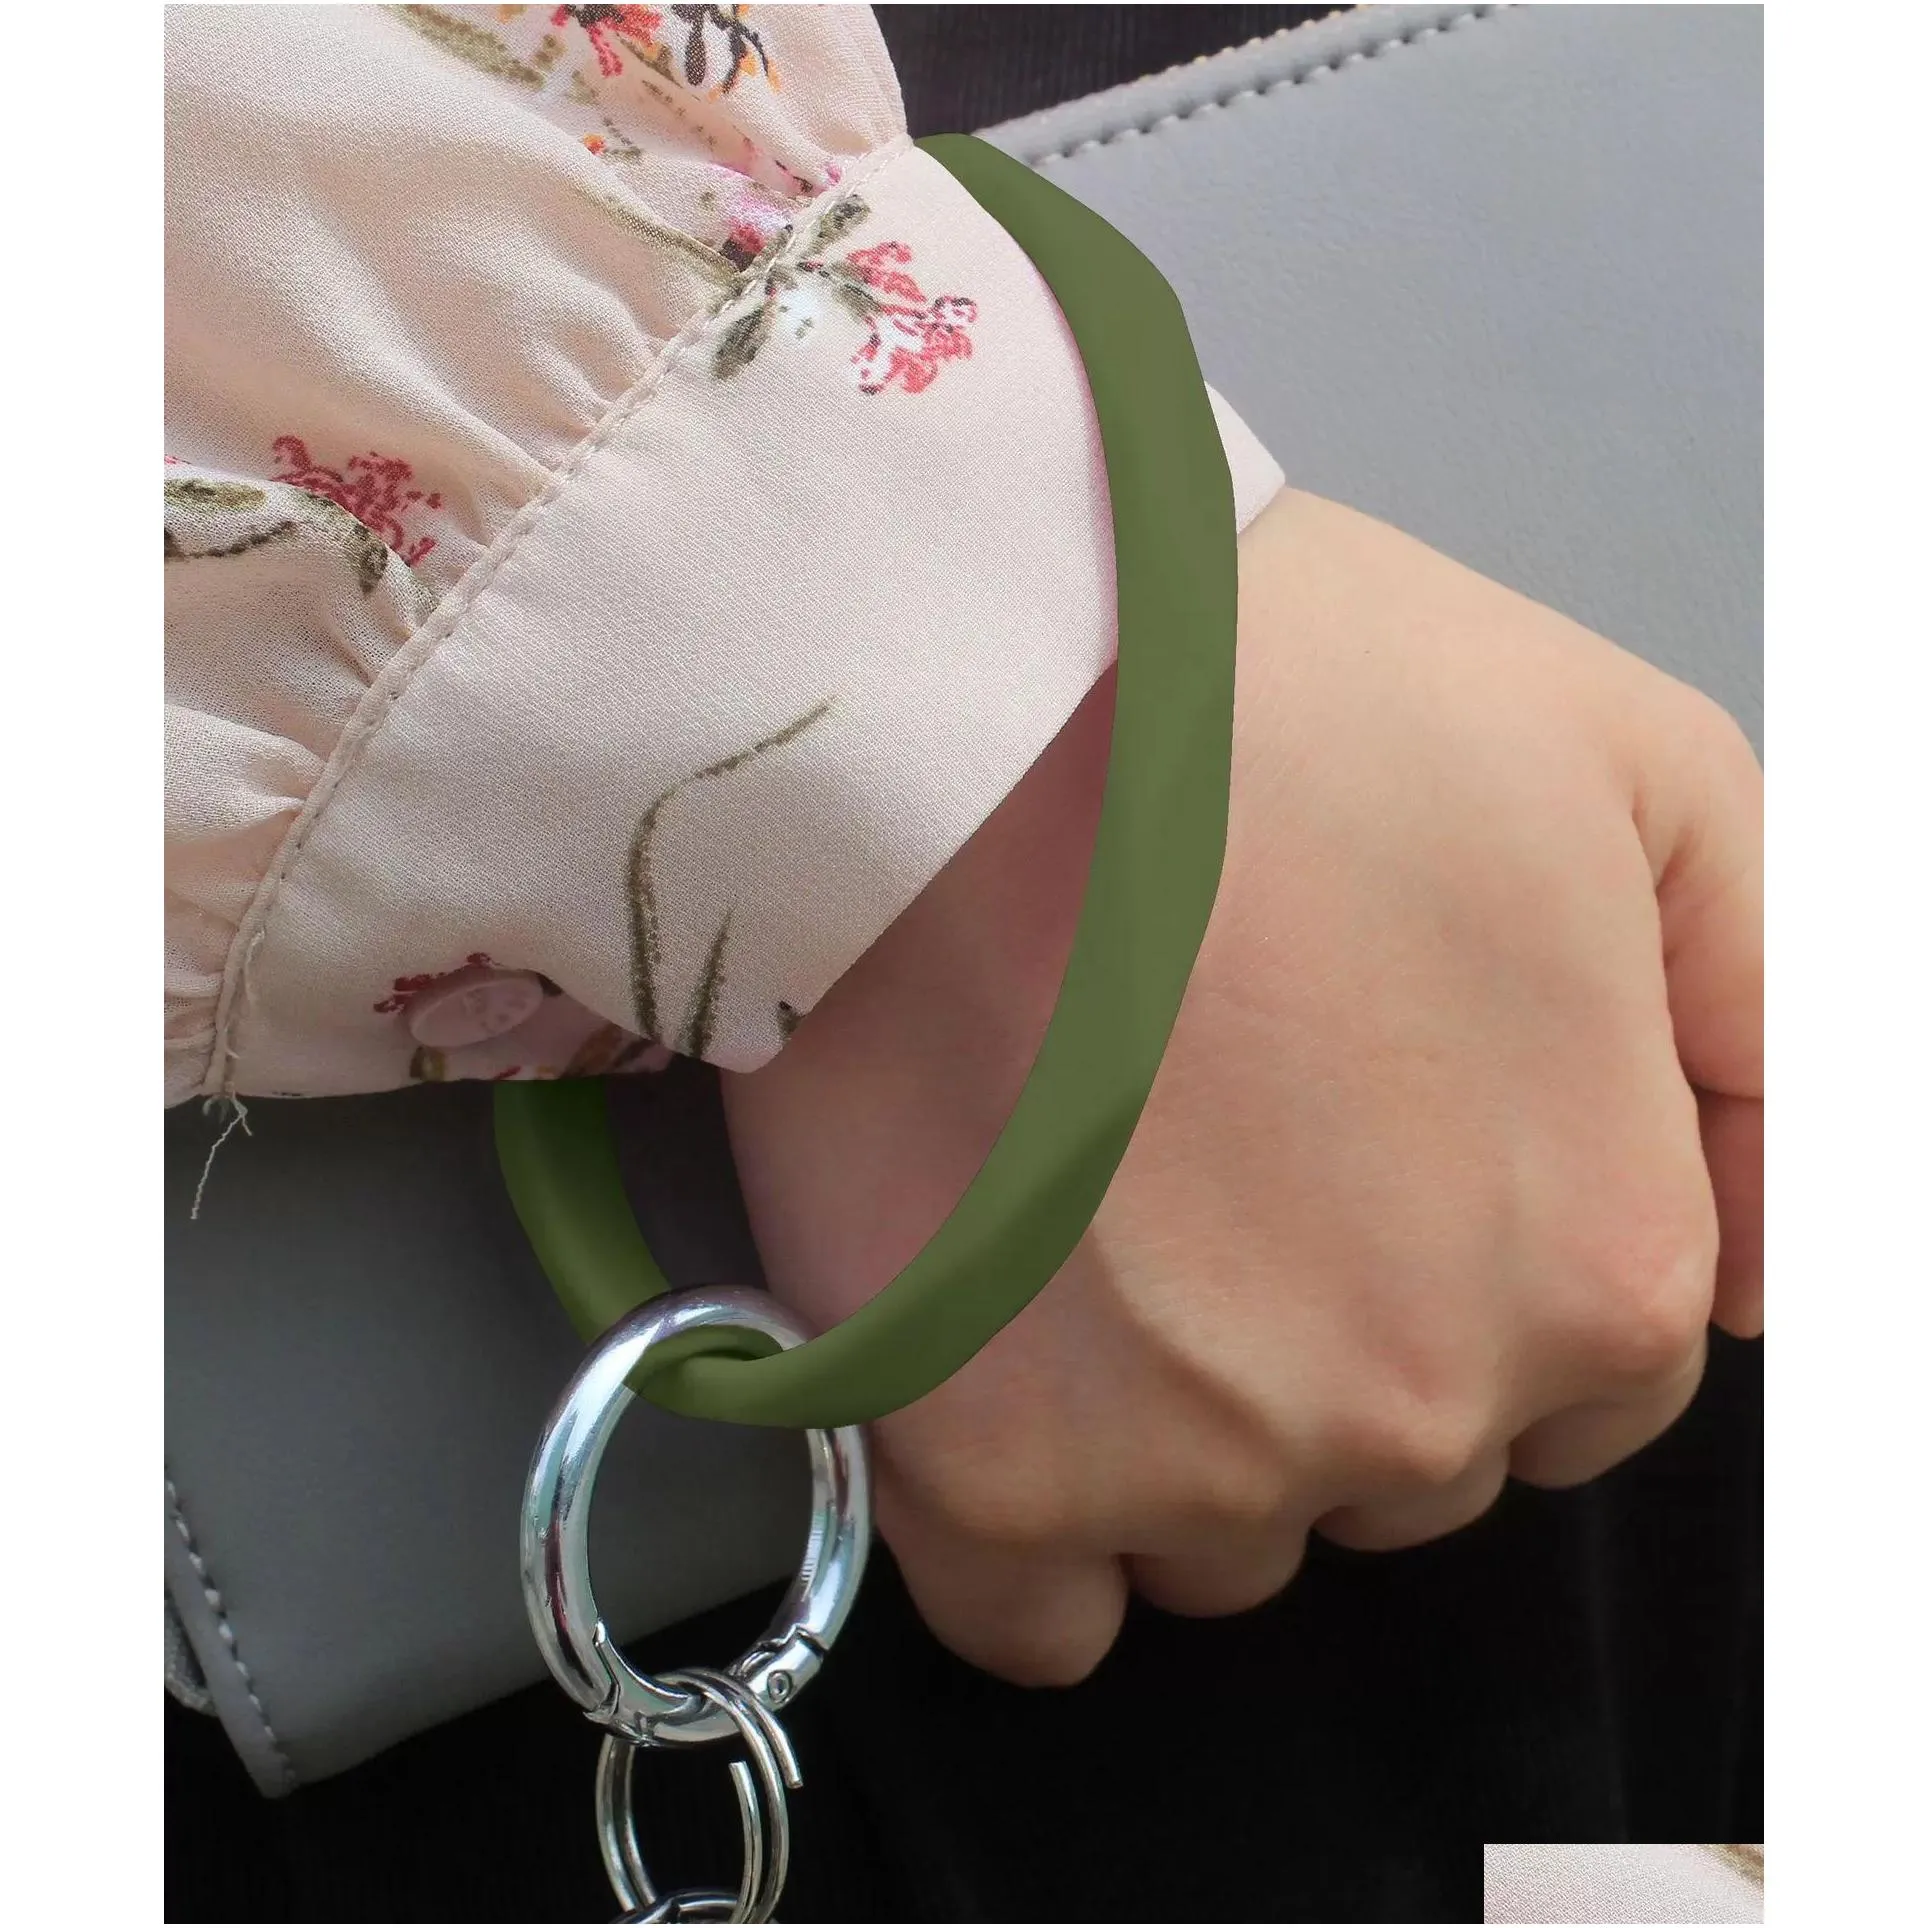 ups 18 colors favor silicone keychain bangle keychain bracelets keyring shaped wristlet bracelet circle charm key ring holder